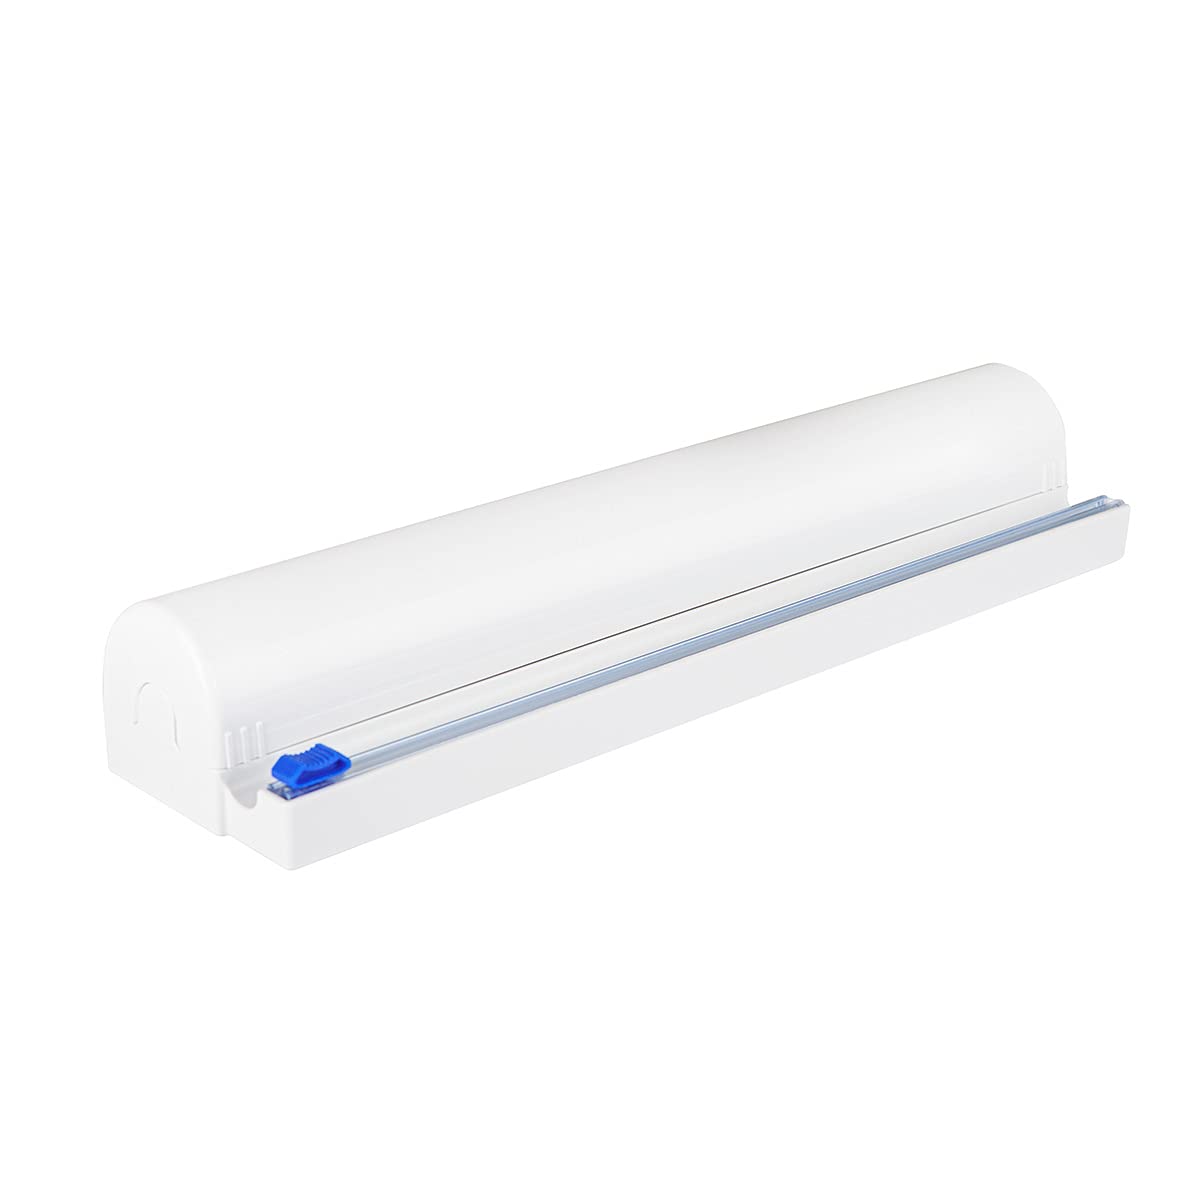 Refillable Plastic Wrap Dispenser Slide Cutter